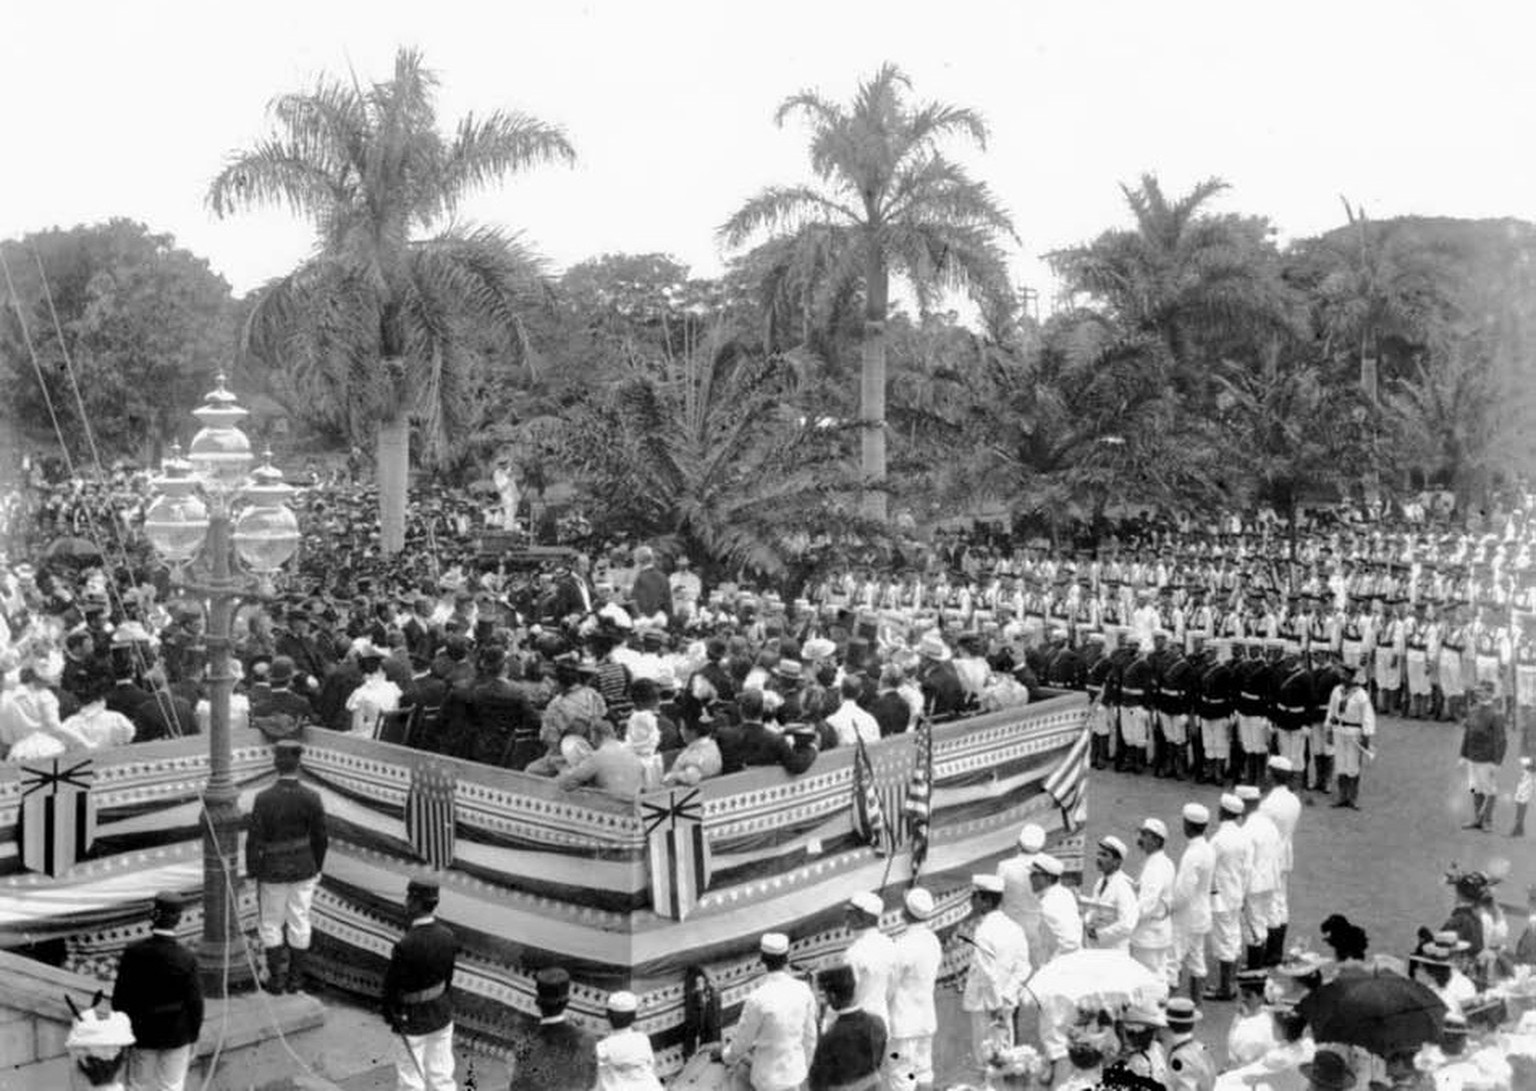 US Marines hissen 1898 die US-Flagge auf Hawaii.